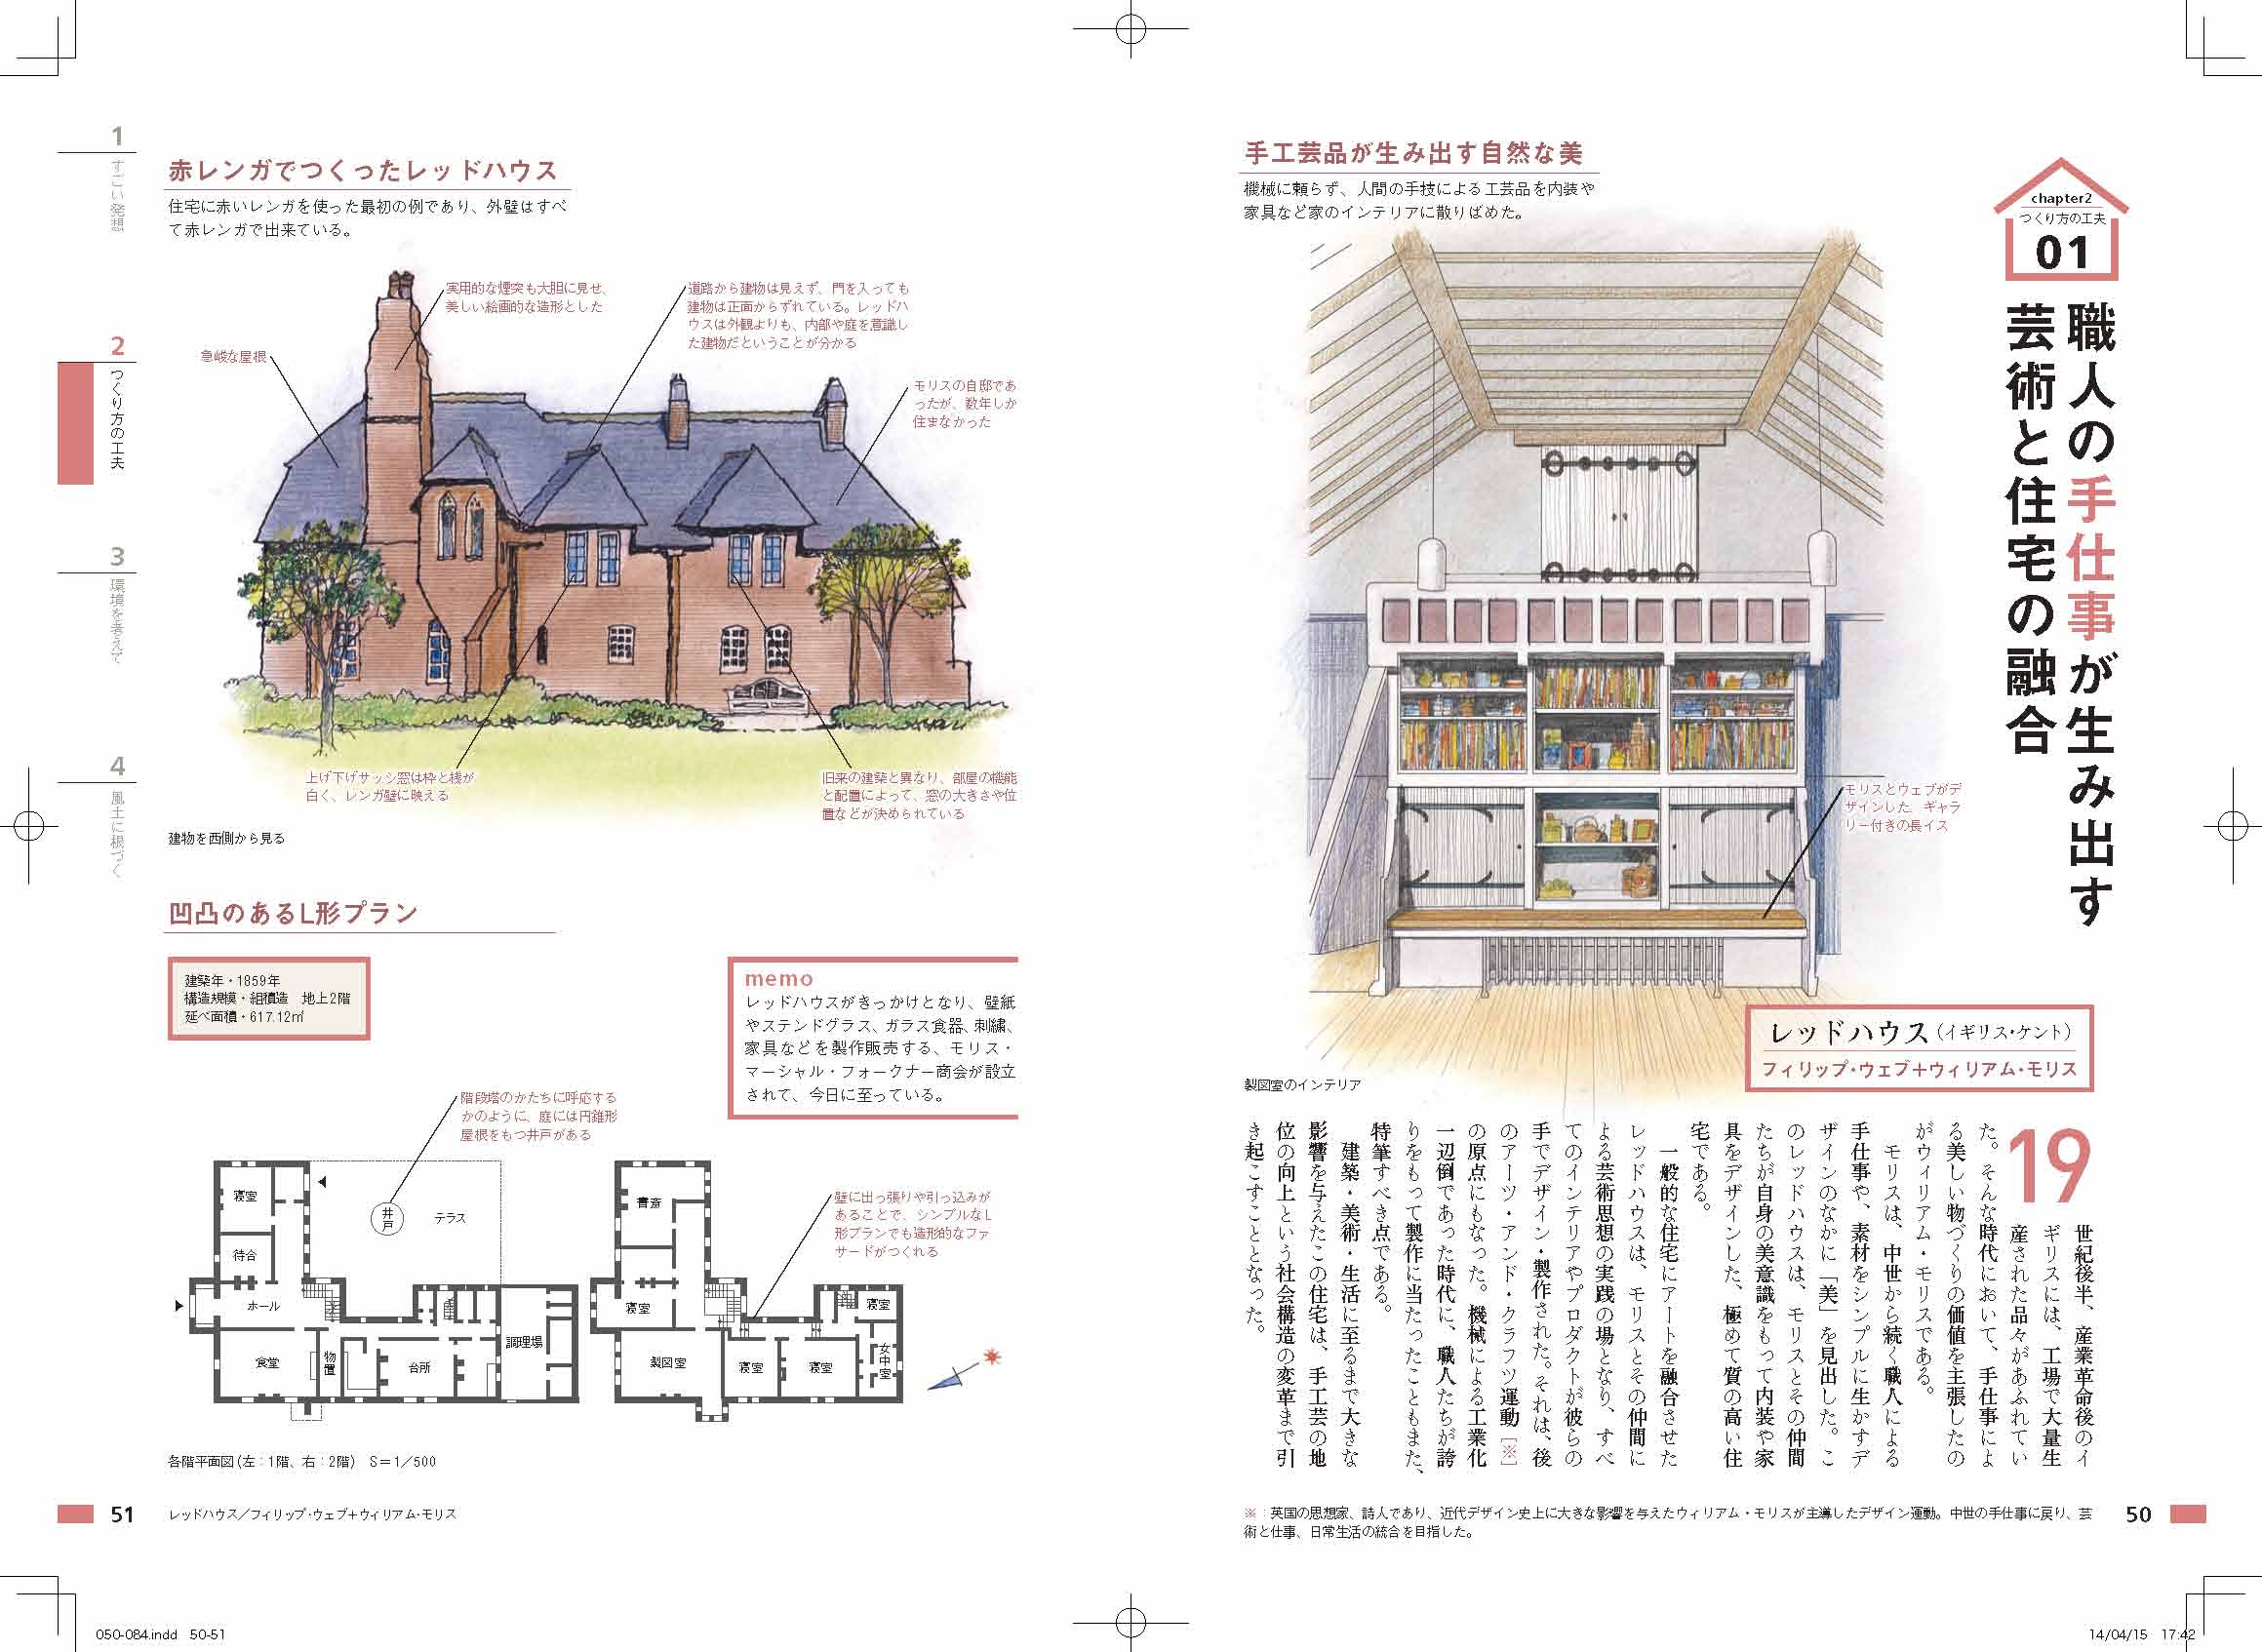 X Knowledge 世界で一番美しい名作住宅の解剖図鑑